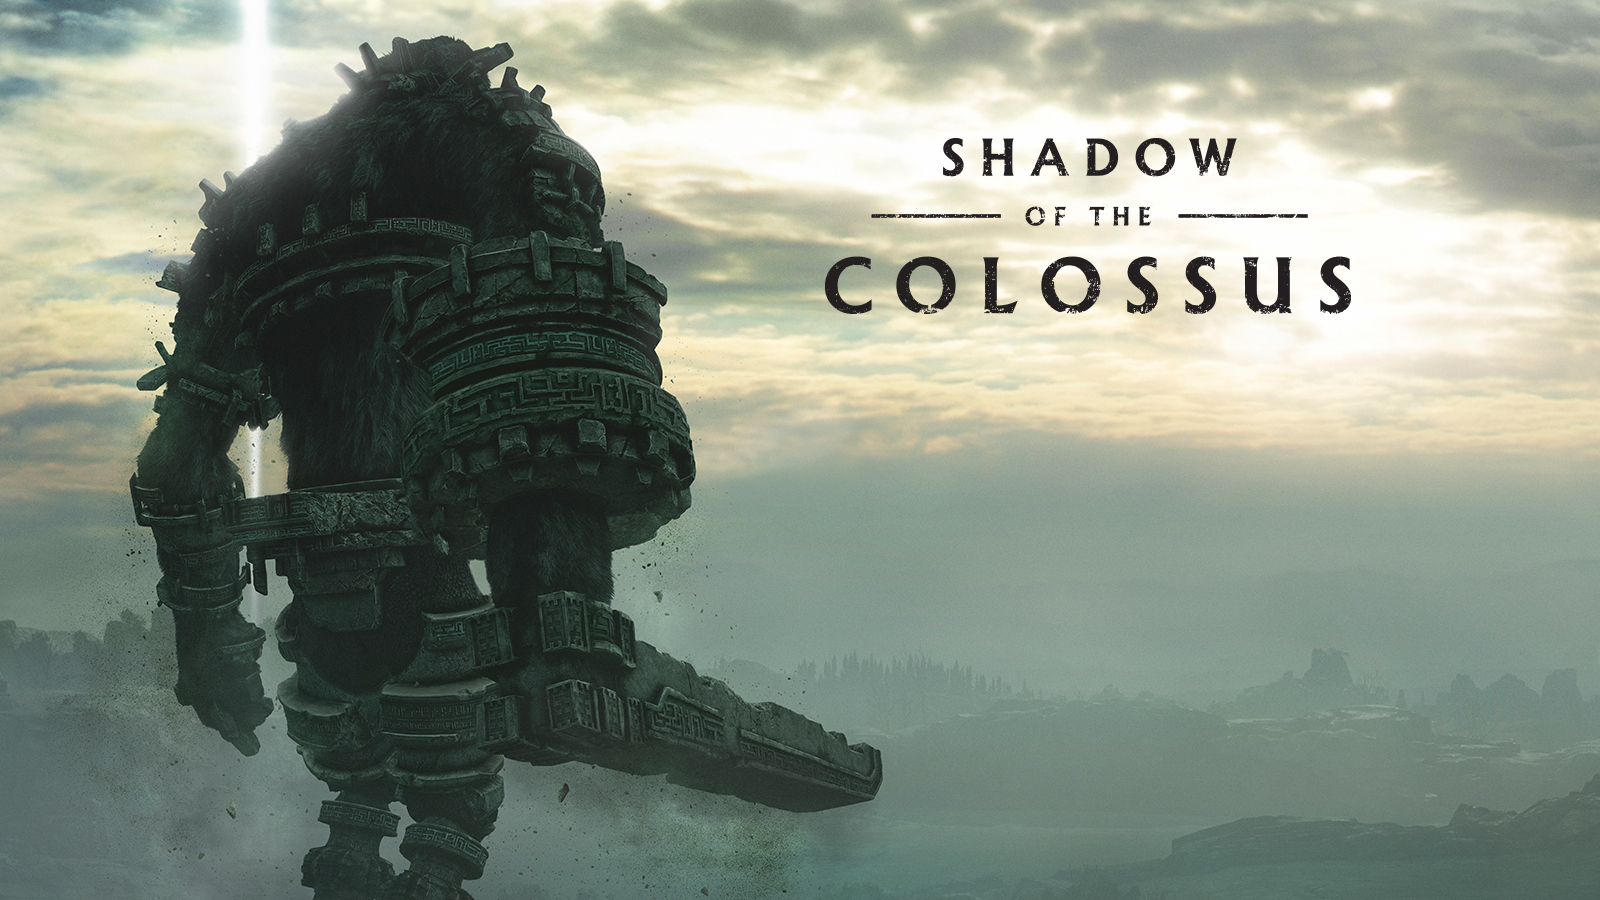 Shadow Of The Colossus Ps4 #1 (Com Detalhe) (Jogo Mídia Física